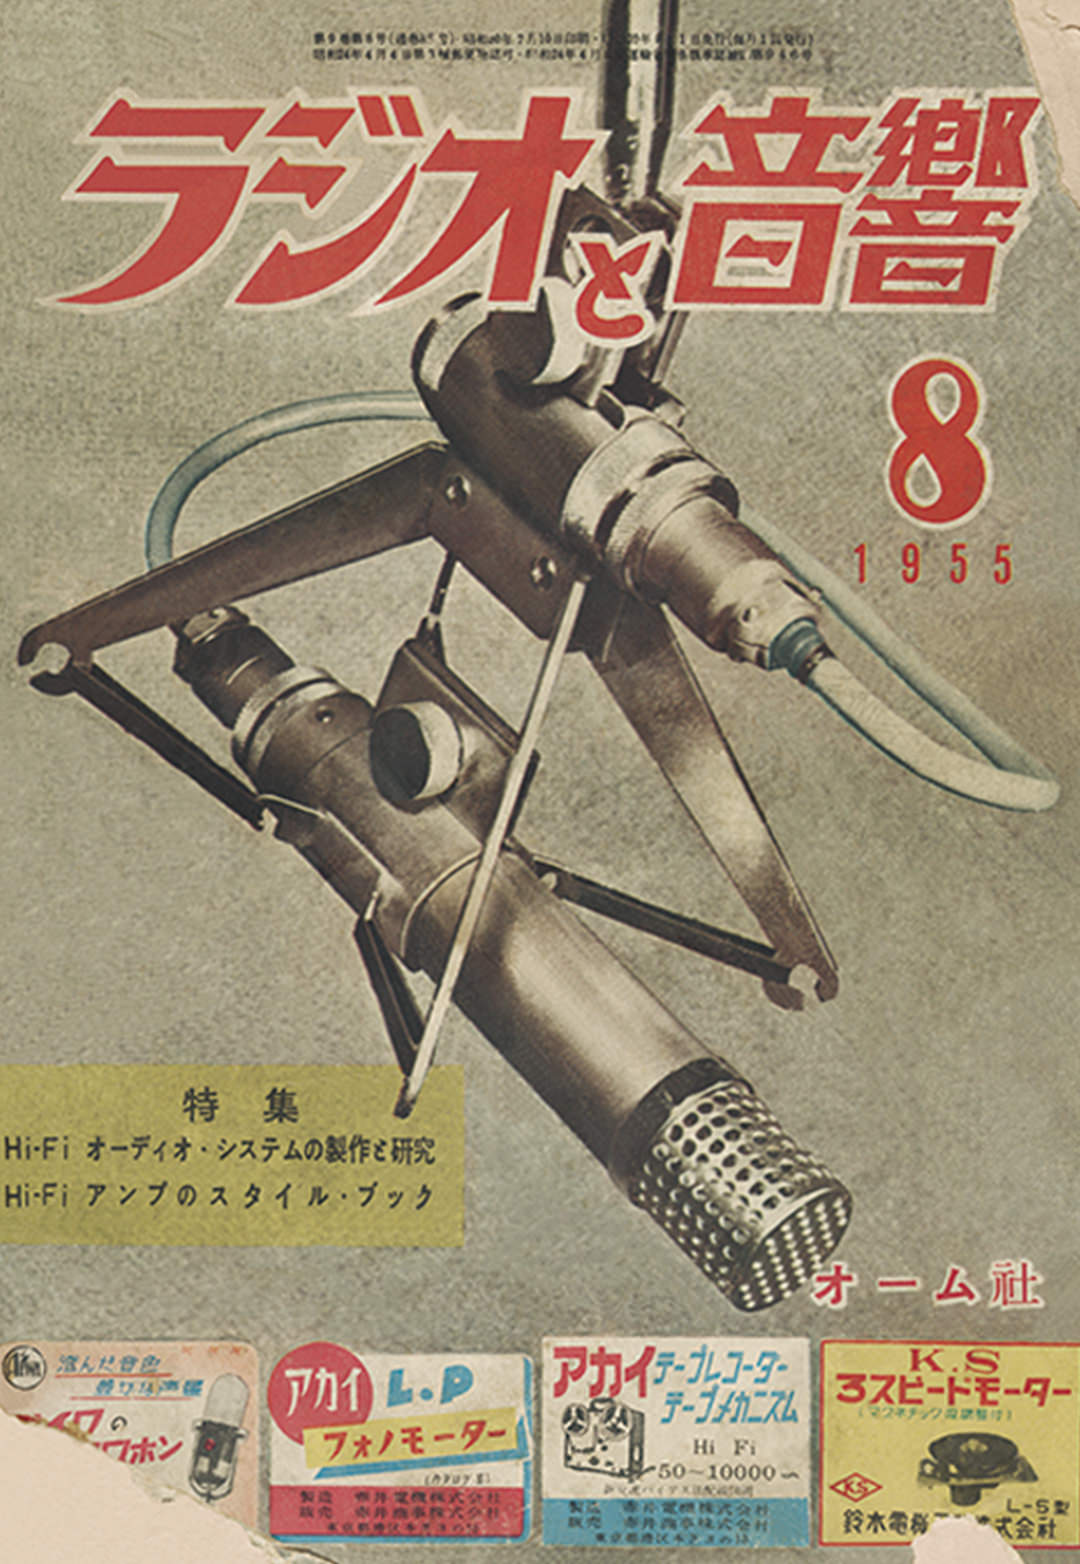 日比野宏明の執筆記事が掲載された「ラジオと音響」（オーム社 刊、1955年8月号）